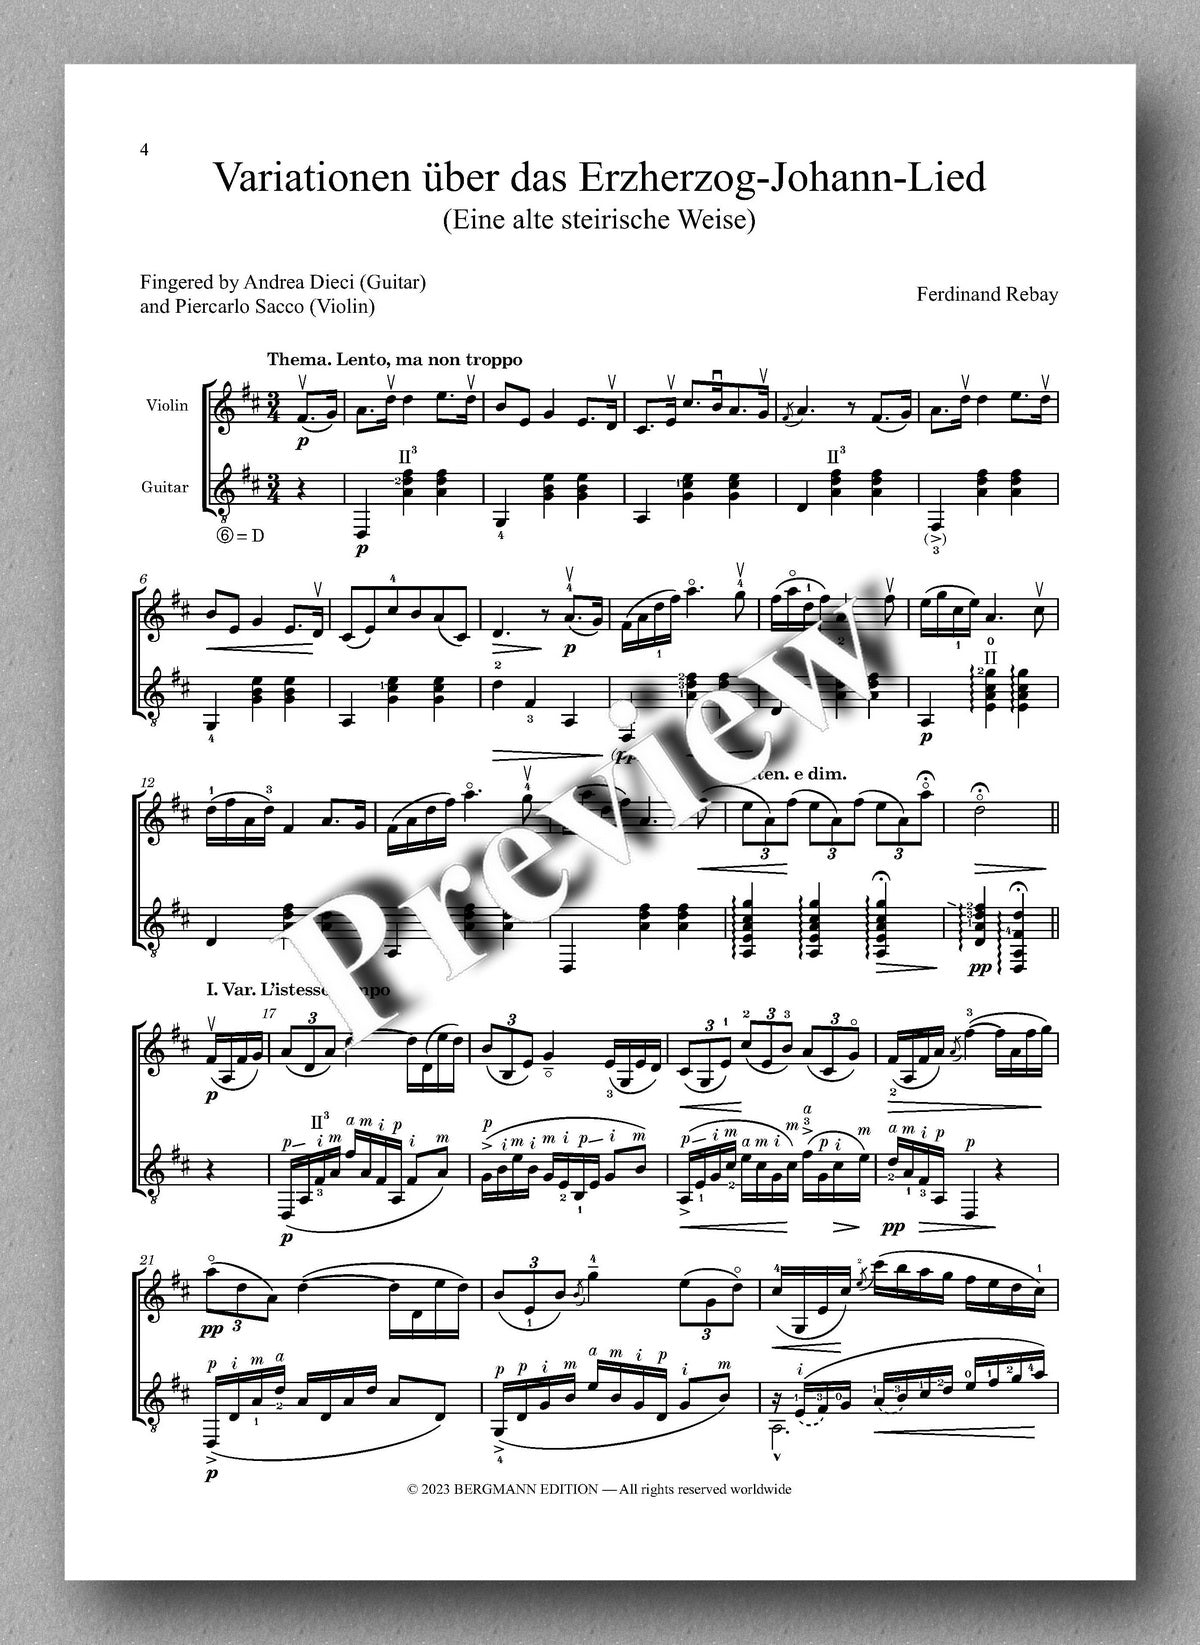 Ferdinand Rebay, Variationen über das ErzherzogJohann-Lied - preview of the music score 1